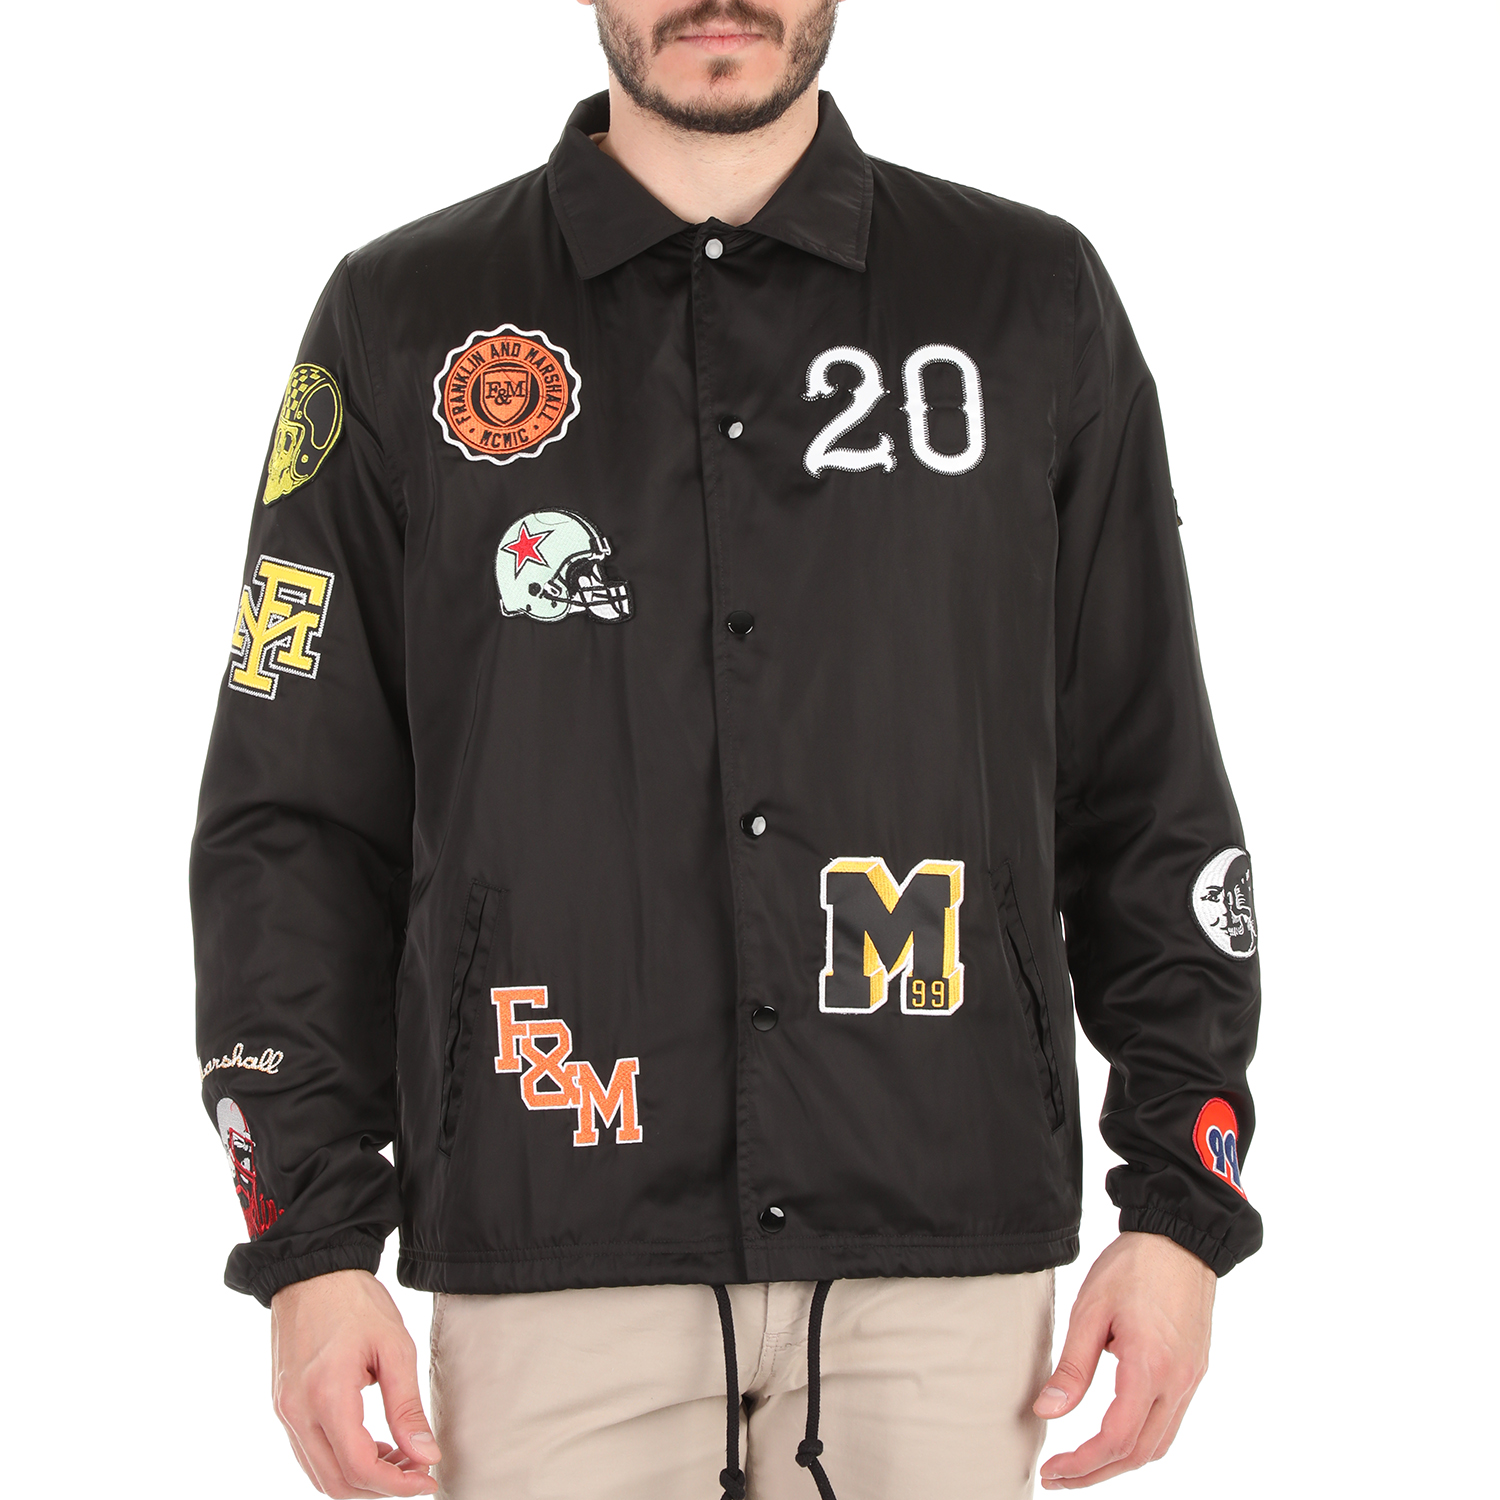 Ανδρικά/Ρούχα/Πανωφόρια/Τζάκετς FRANKLIN & MARSHALL - Ανδρικό jacket FRANKLIN & MARSHALL μαύρο